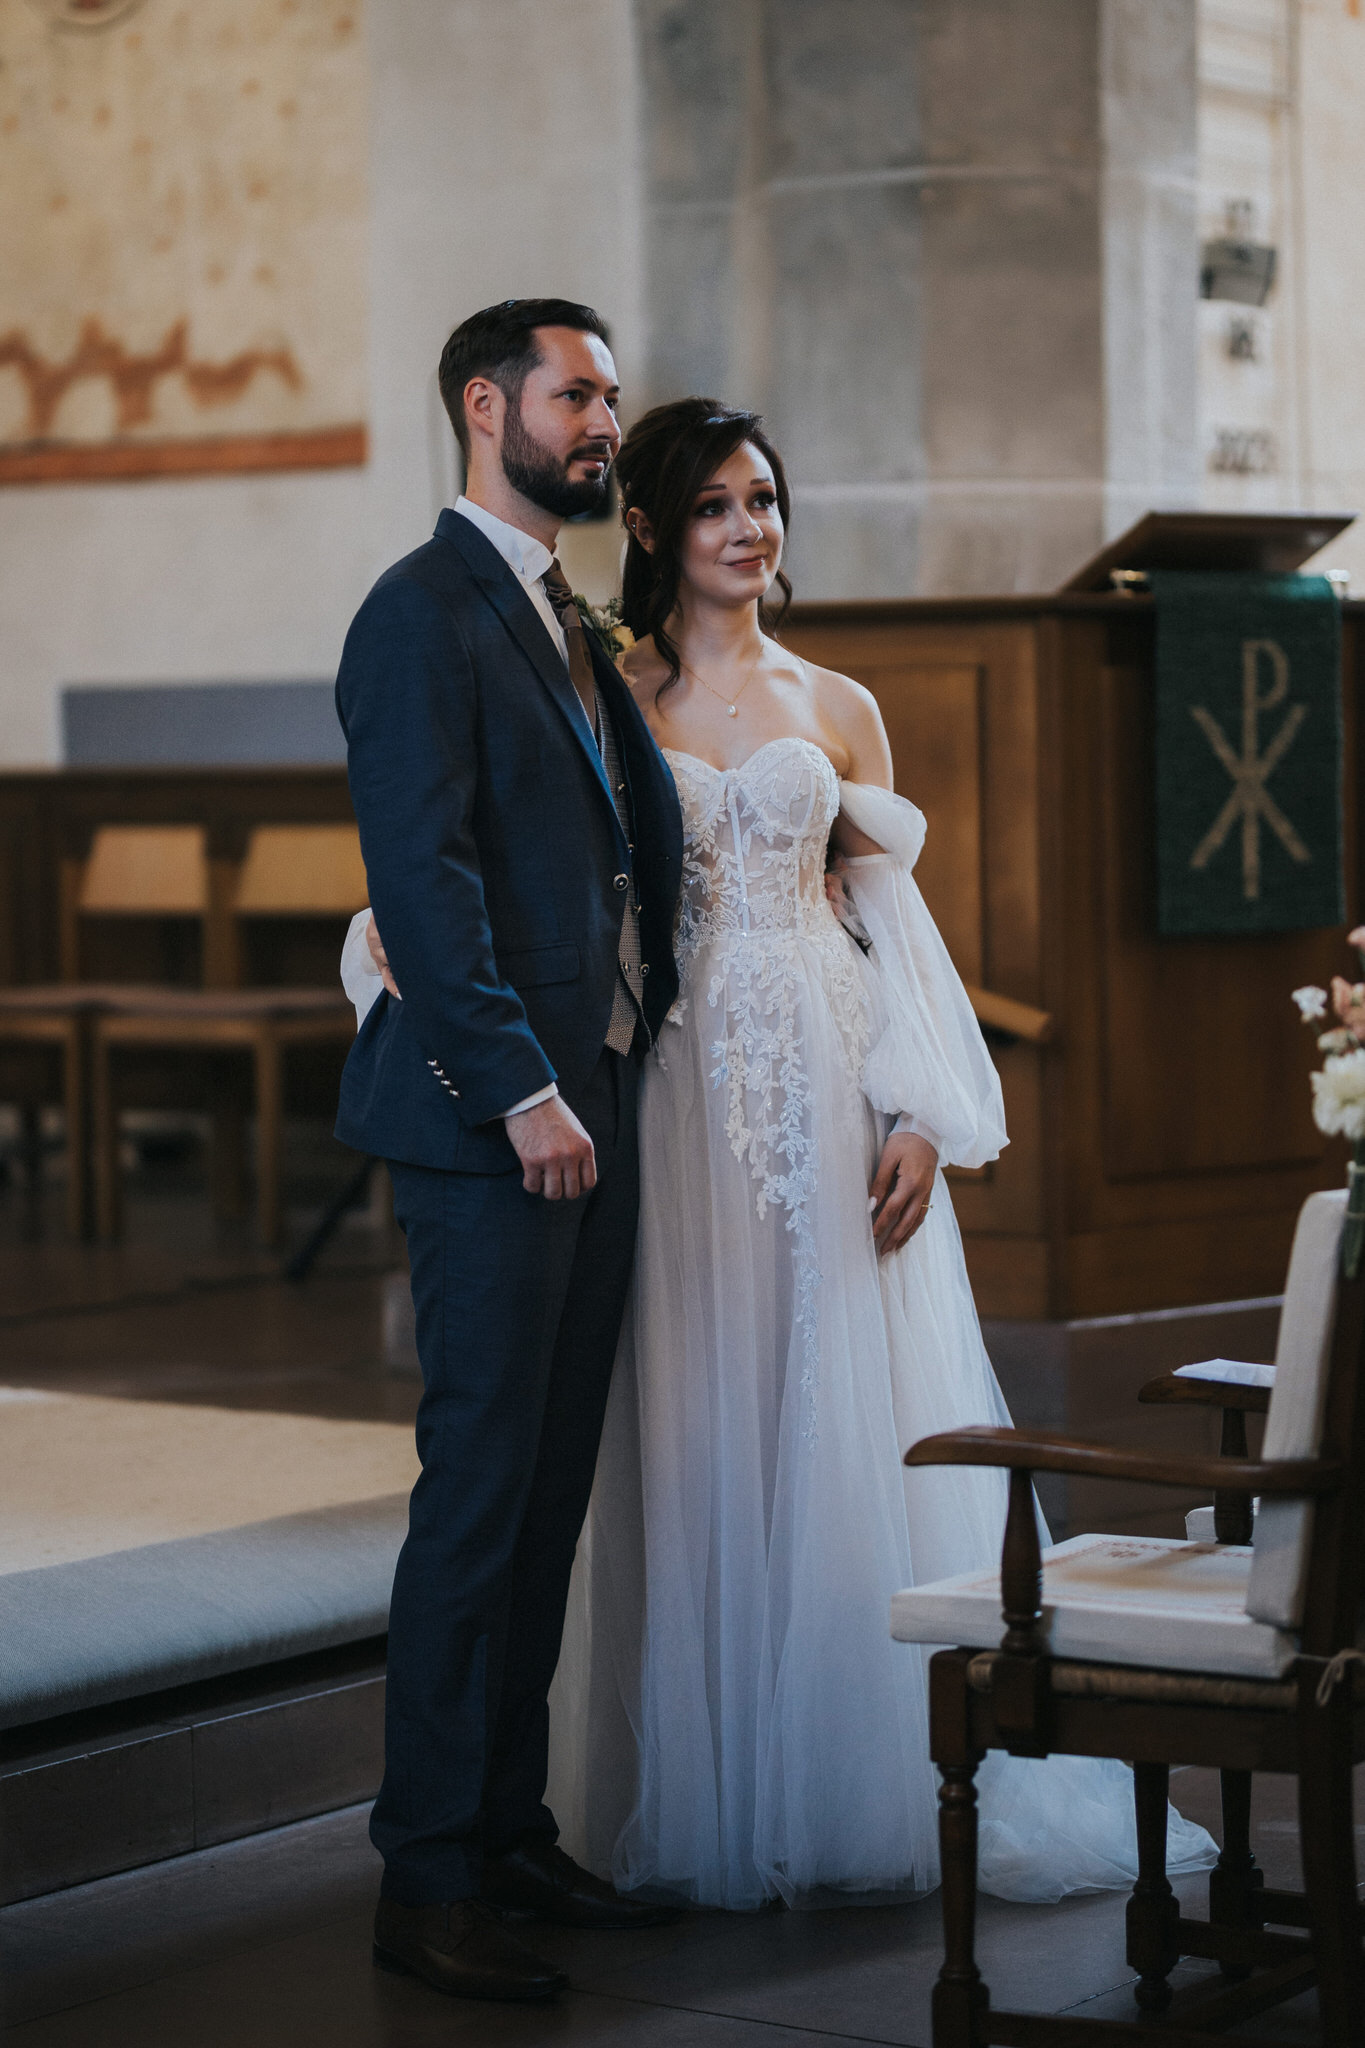 Romantische kirchliche Trauung in der St. Georgs Kirche, Immenhausen – Das Brautpaar gibt sich das Ja-Wort in einer feierlichen Zeremonie, umhüllt von sakraler Stimmung und liebevoller Gemeinschaft.